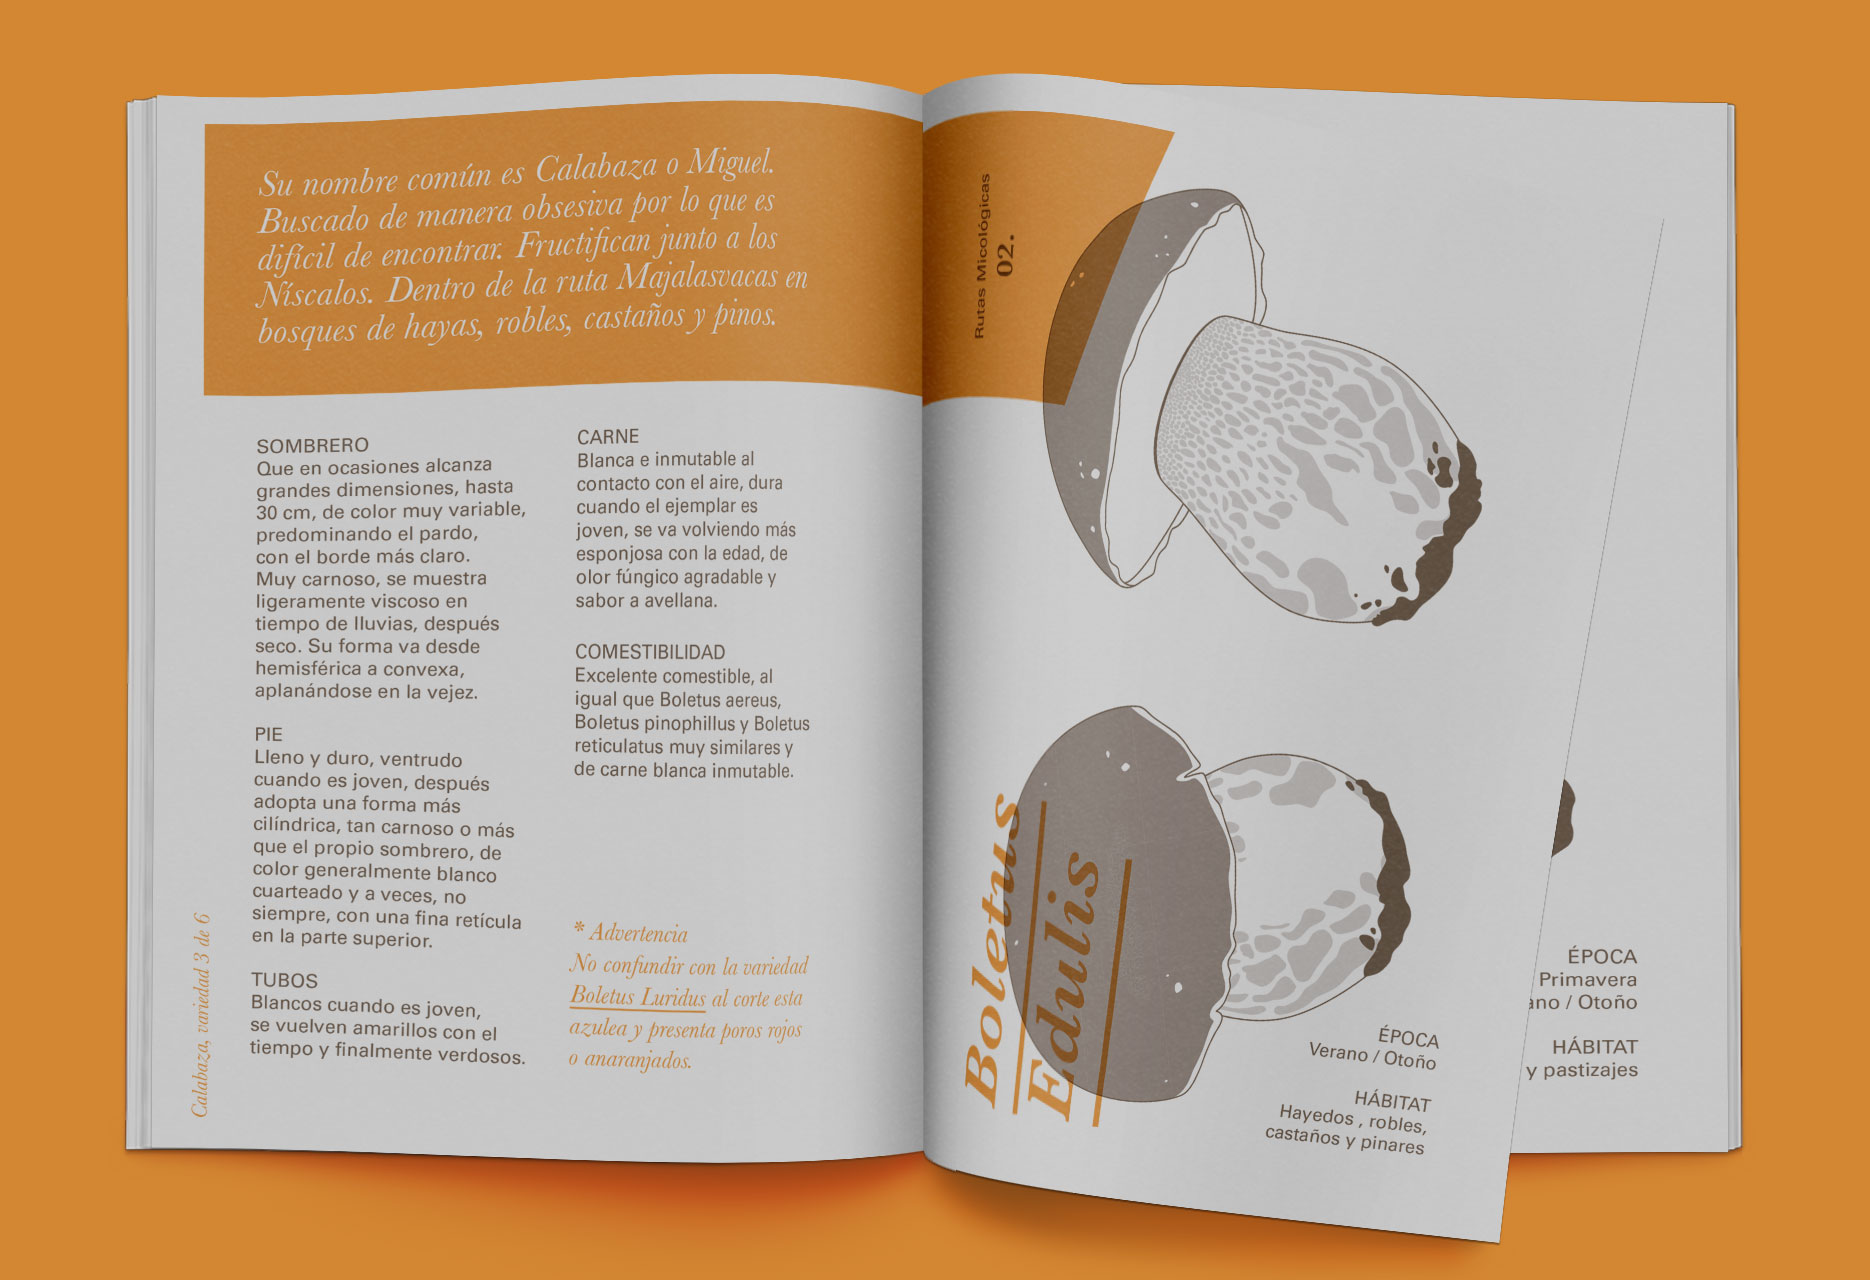 Diseño de marca y guía micológica Tierras de Berlanga - diseño editorial / identidad corporativa / ilustración